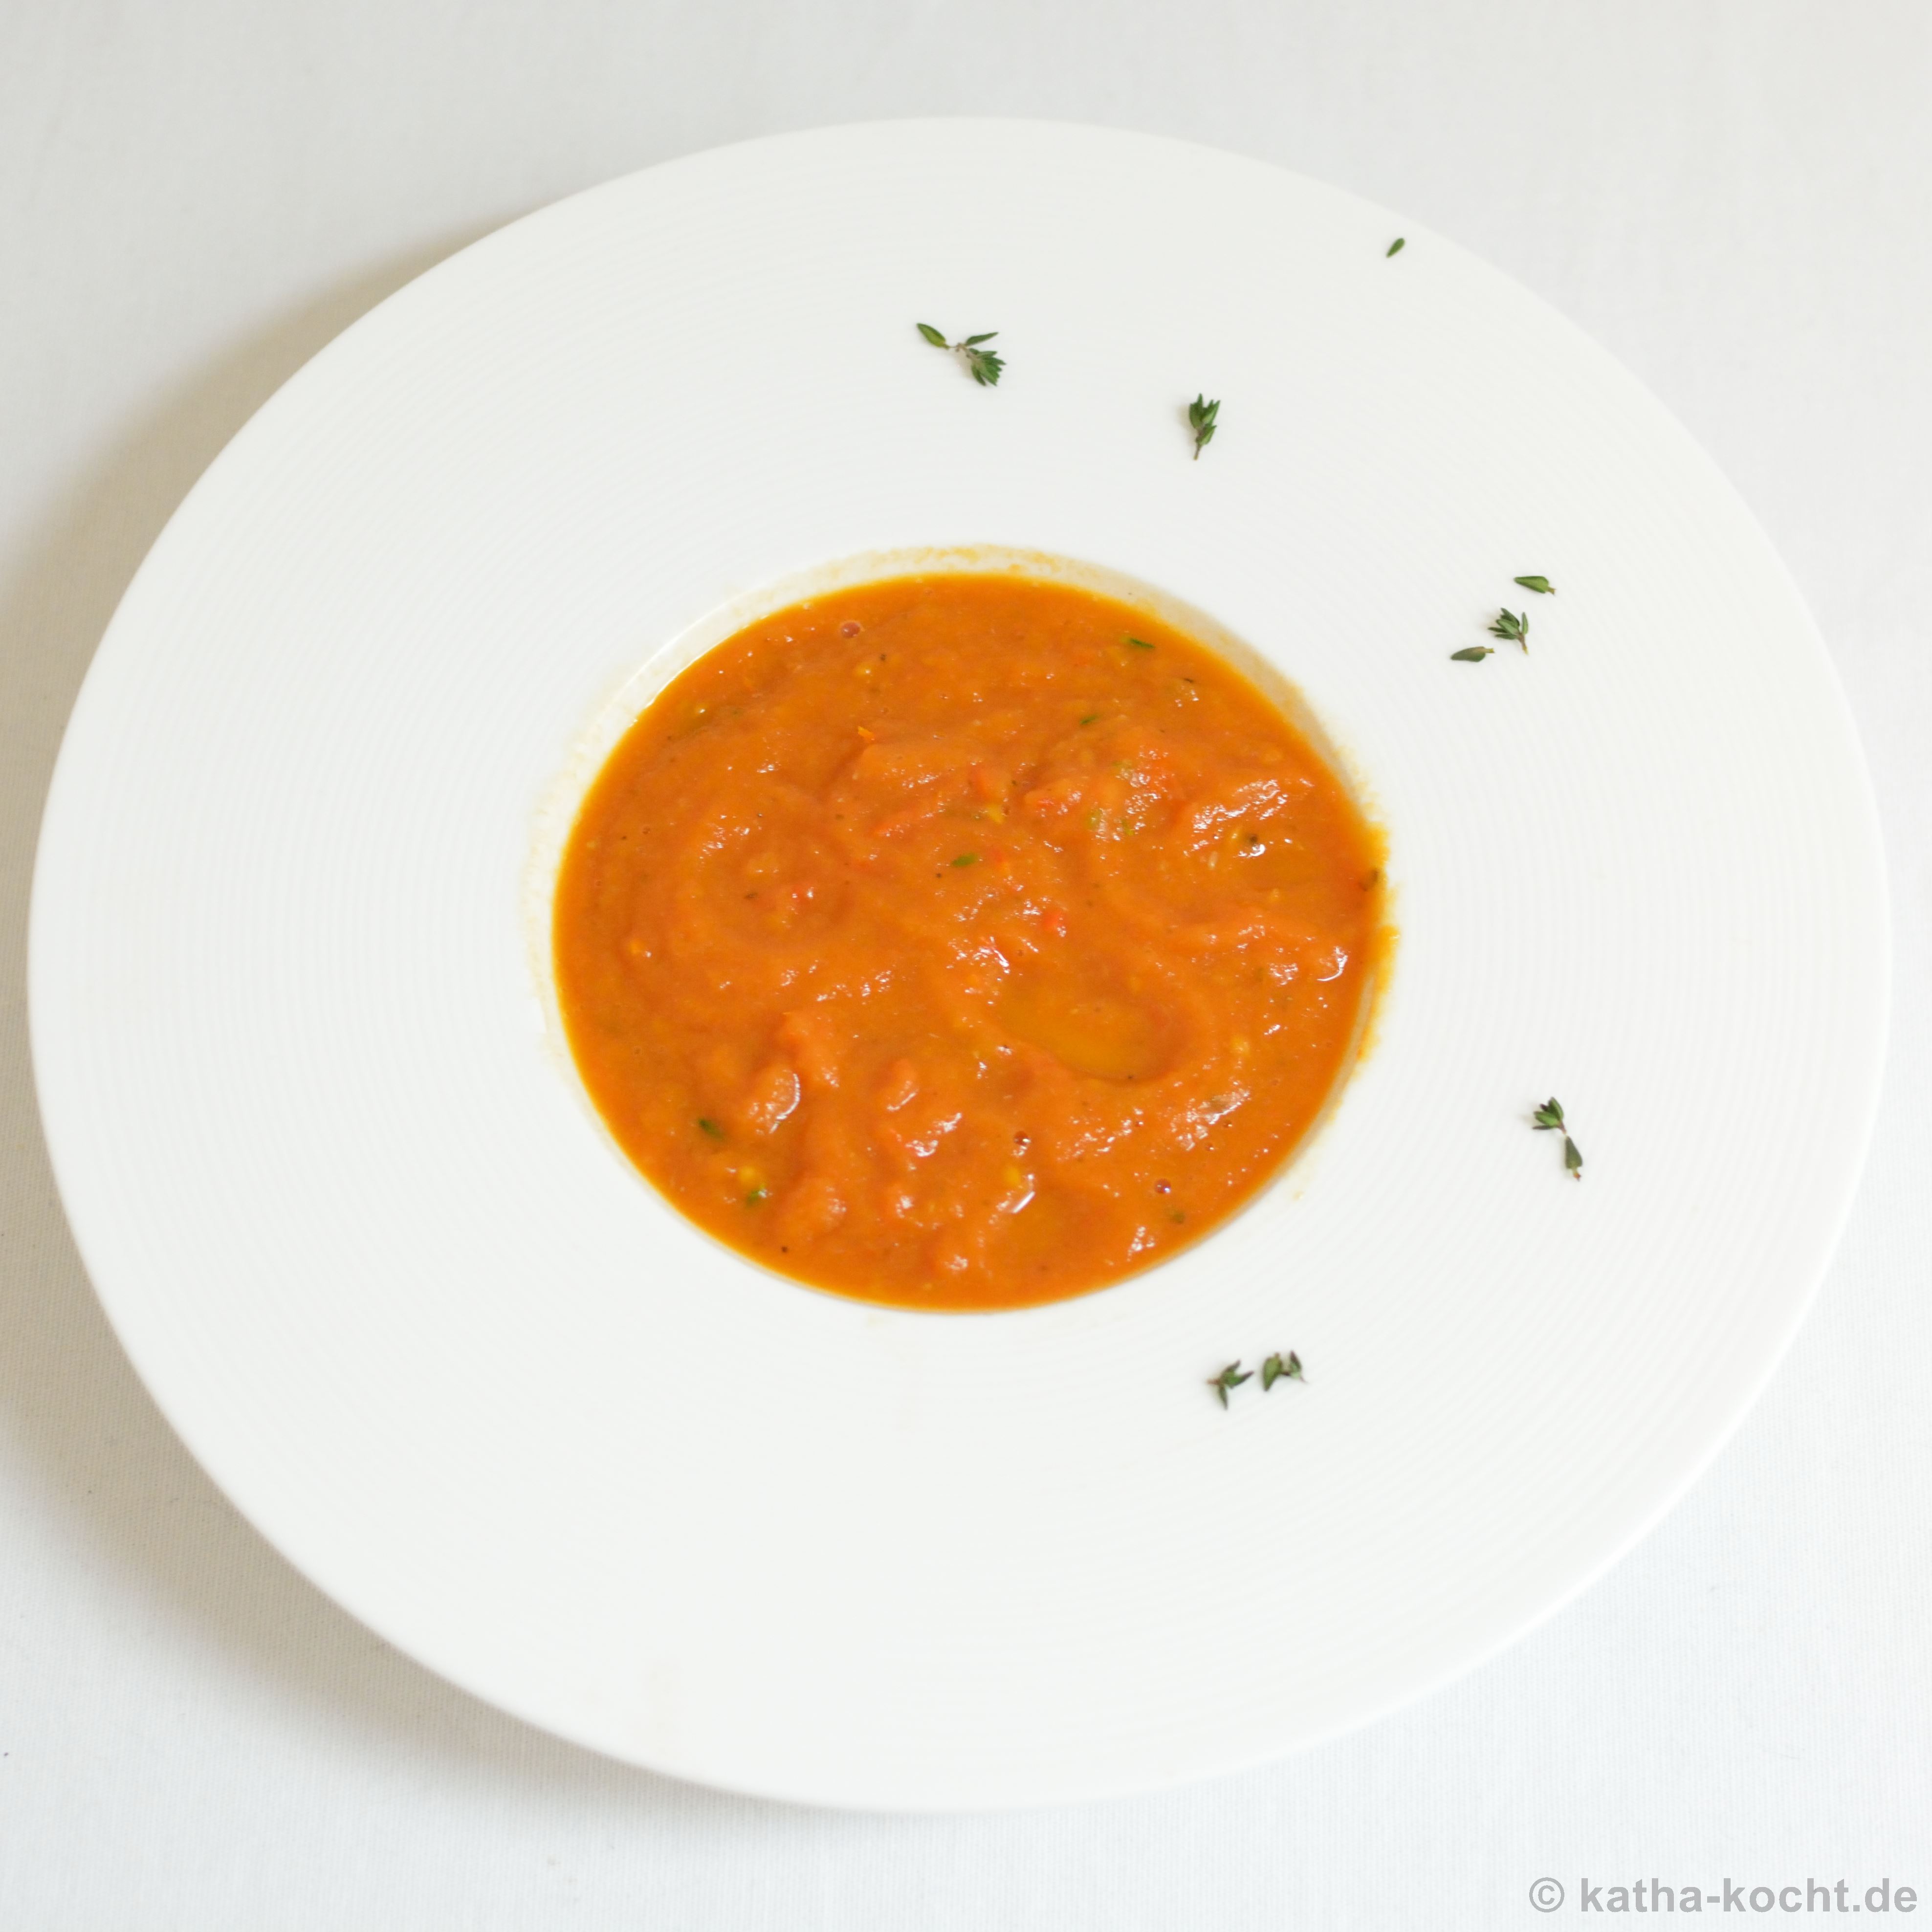 Tomaten-Auberginen Suppe